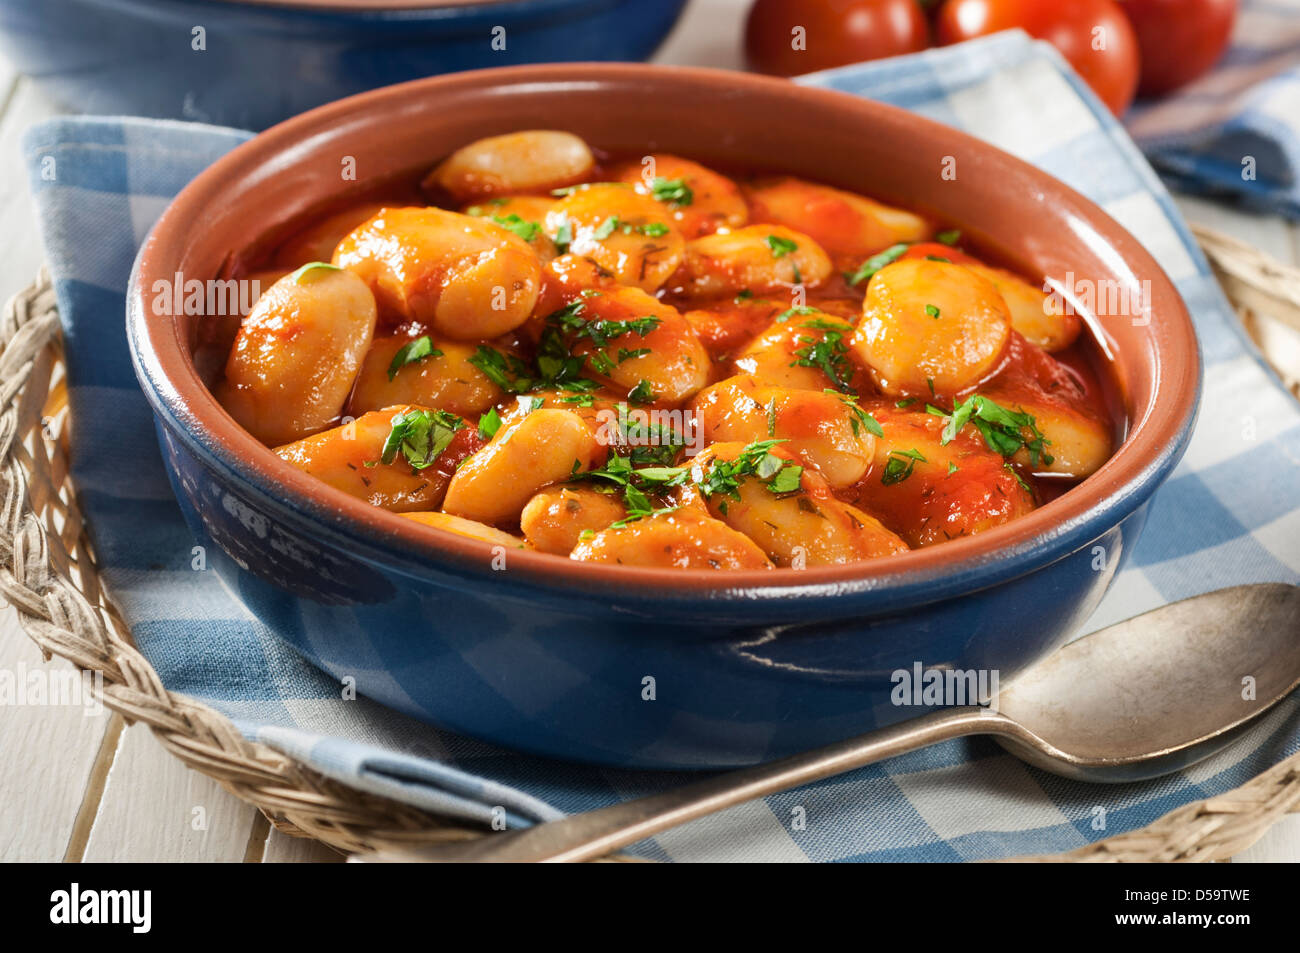 Gigantes plaki Large white beans in tomato sauce Greece Food Stock Photo